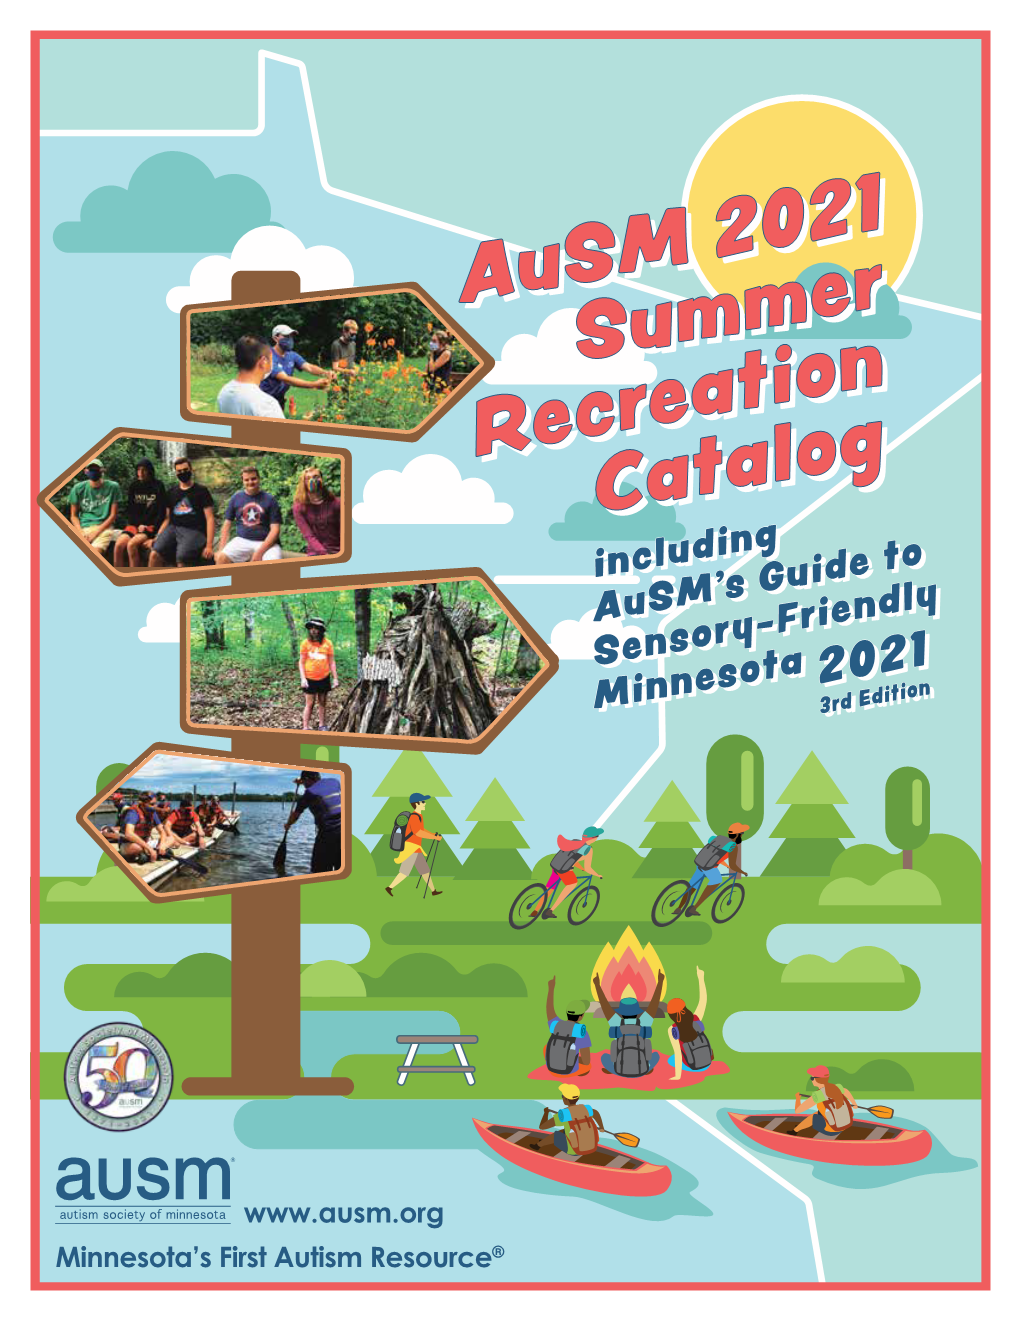 2021 Ausm Summer Recreation Catalog/Ausm's Guide to Sensory